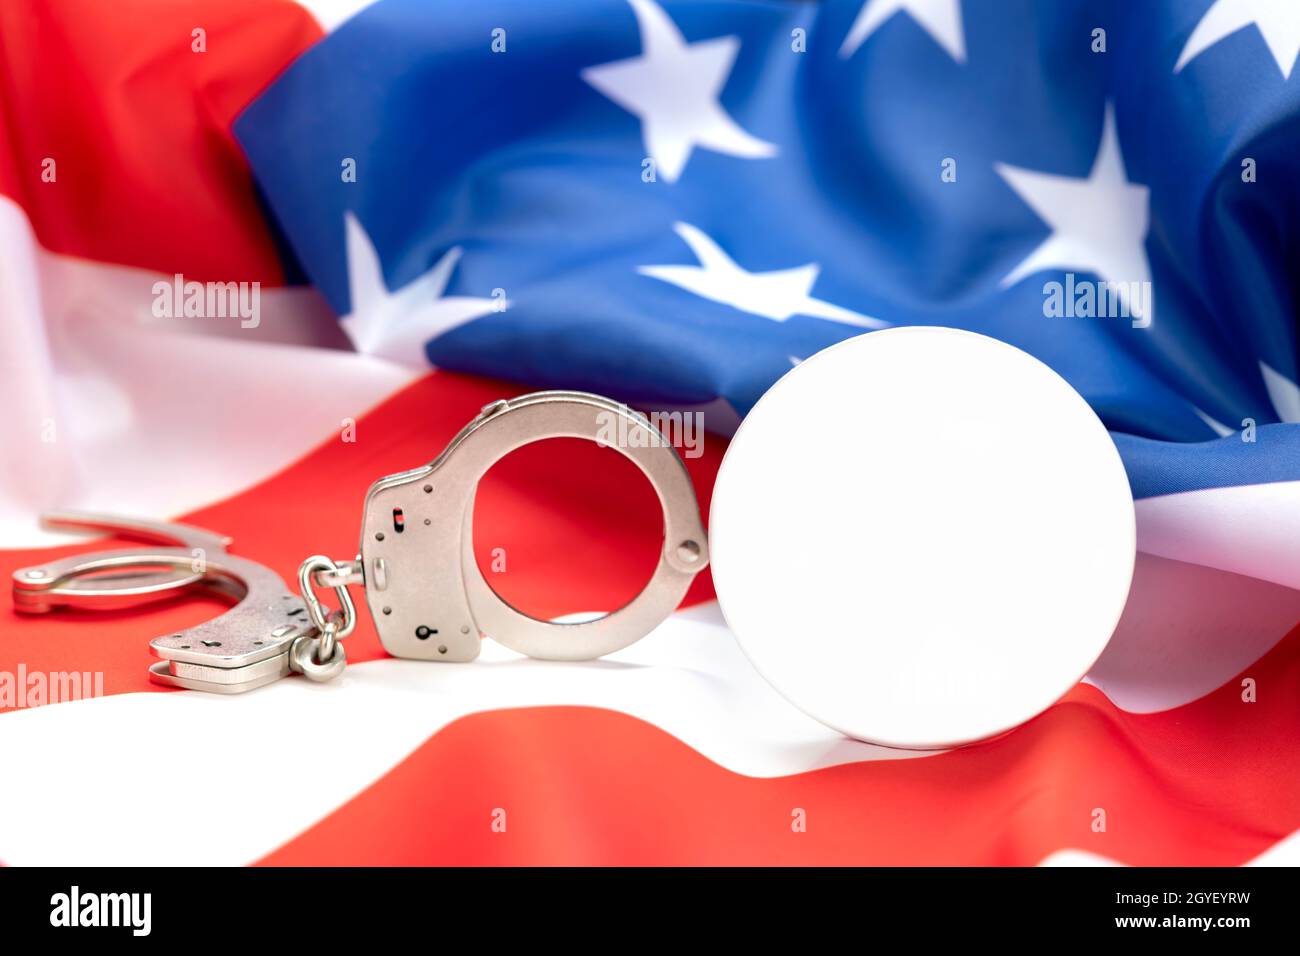 Las imágenes muestran un botón en blanco para colocar cualquier copia que muestre el vínculo entre la ley, el orden y el crimen en Estados Unidos. Foto de stock